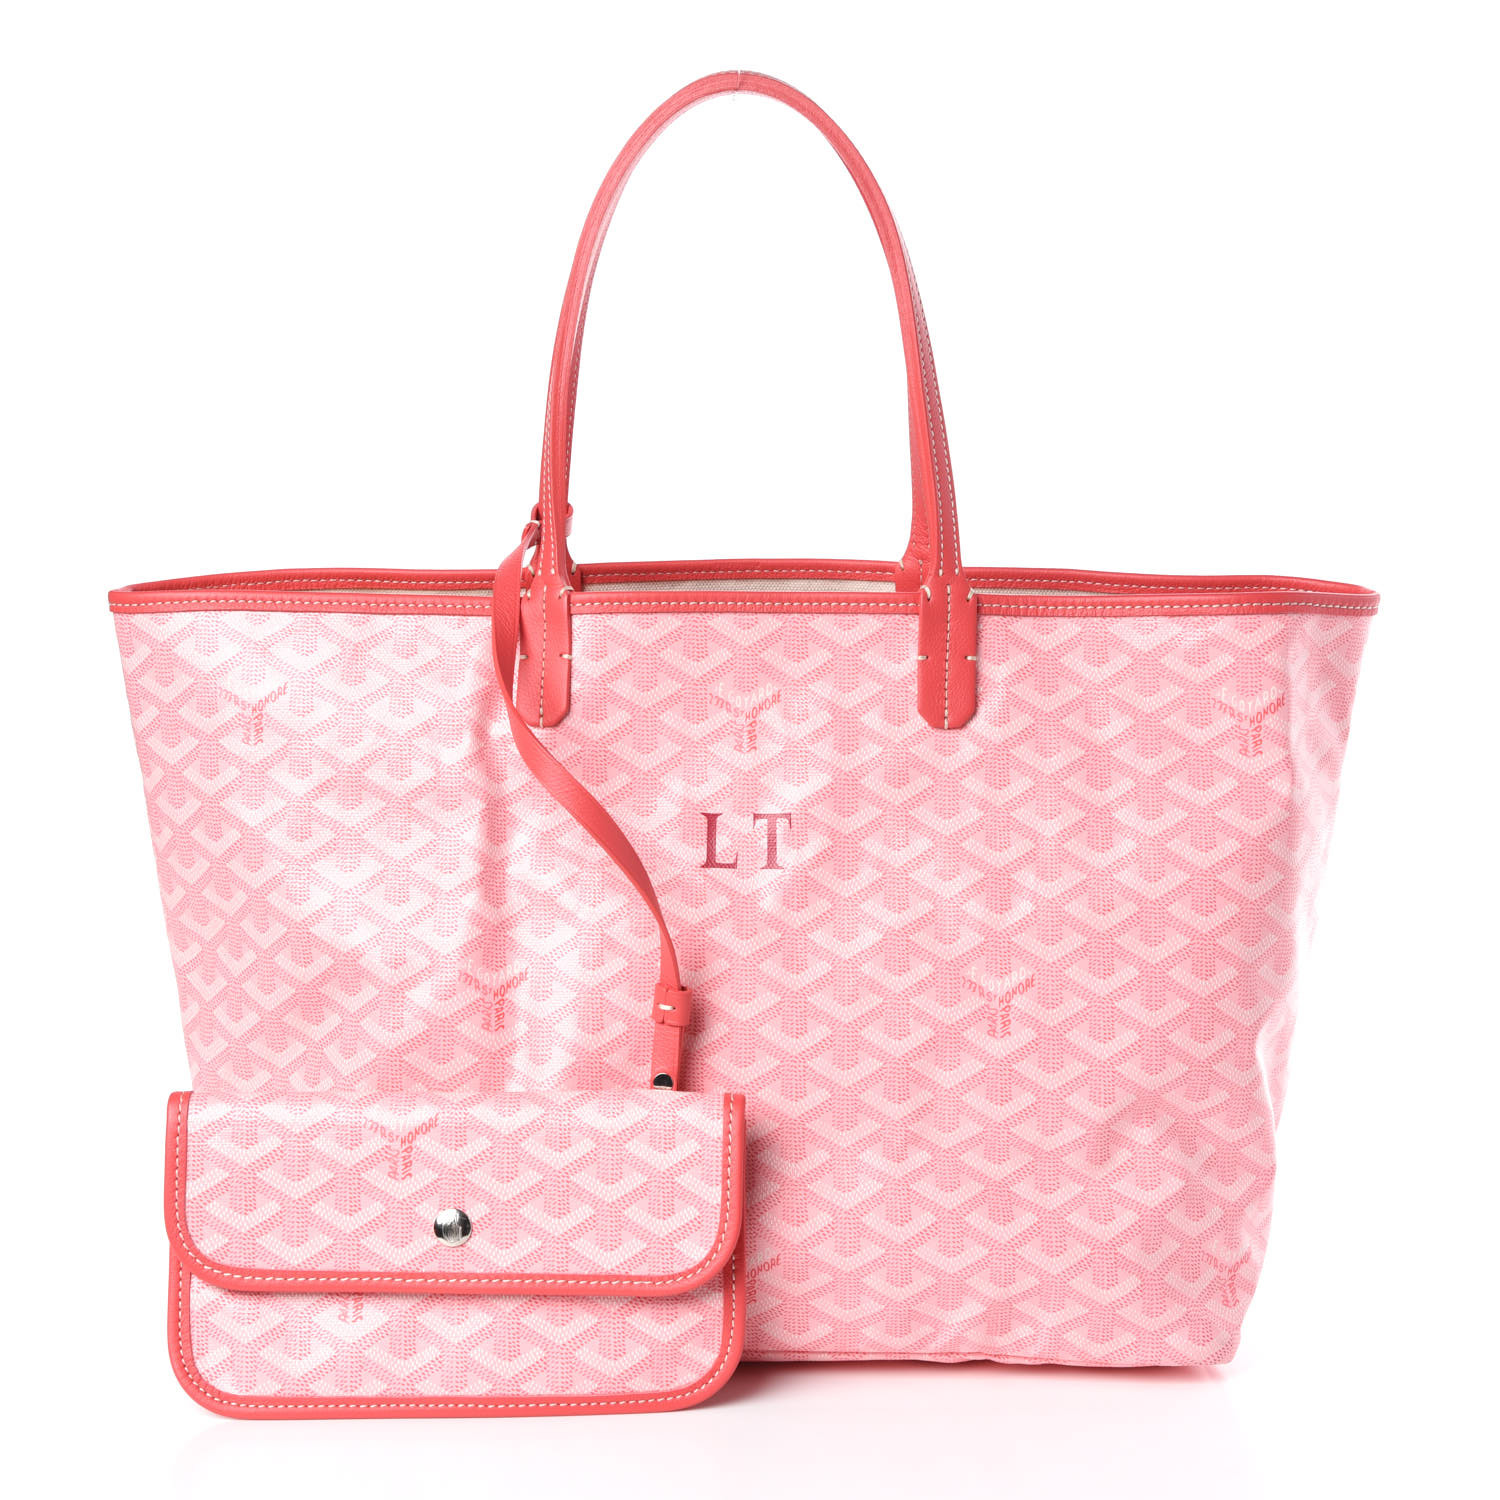 goyard pink tote bag